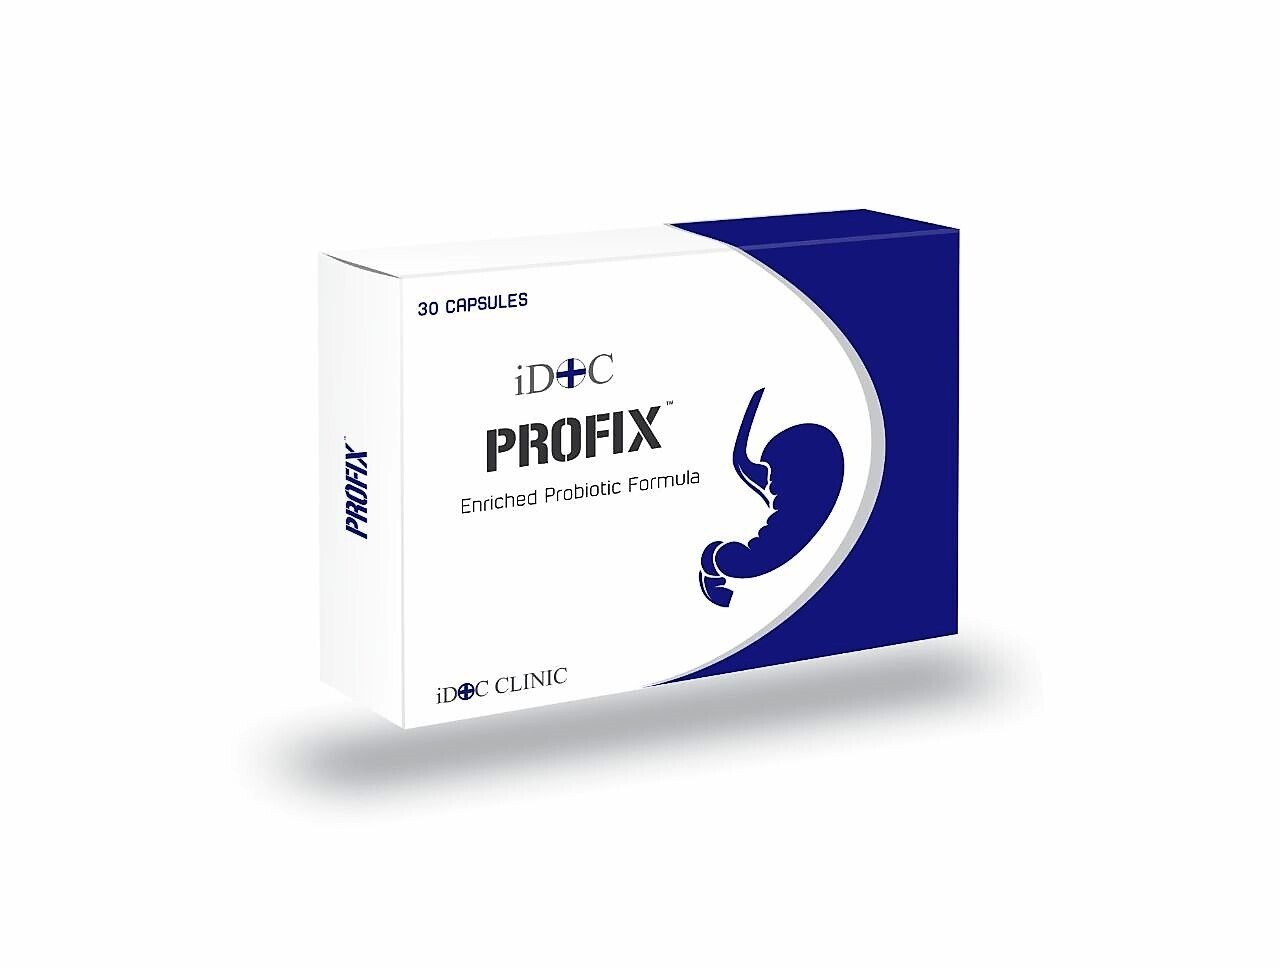 iDOC PROFIX (30caps)
*pre order*